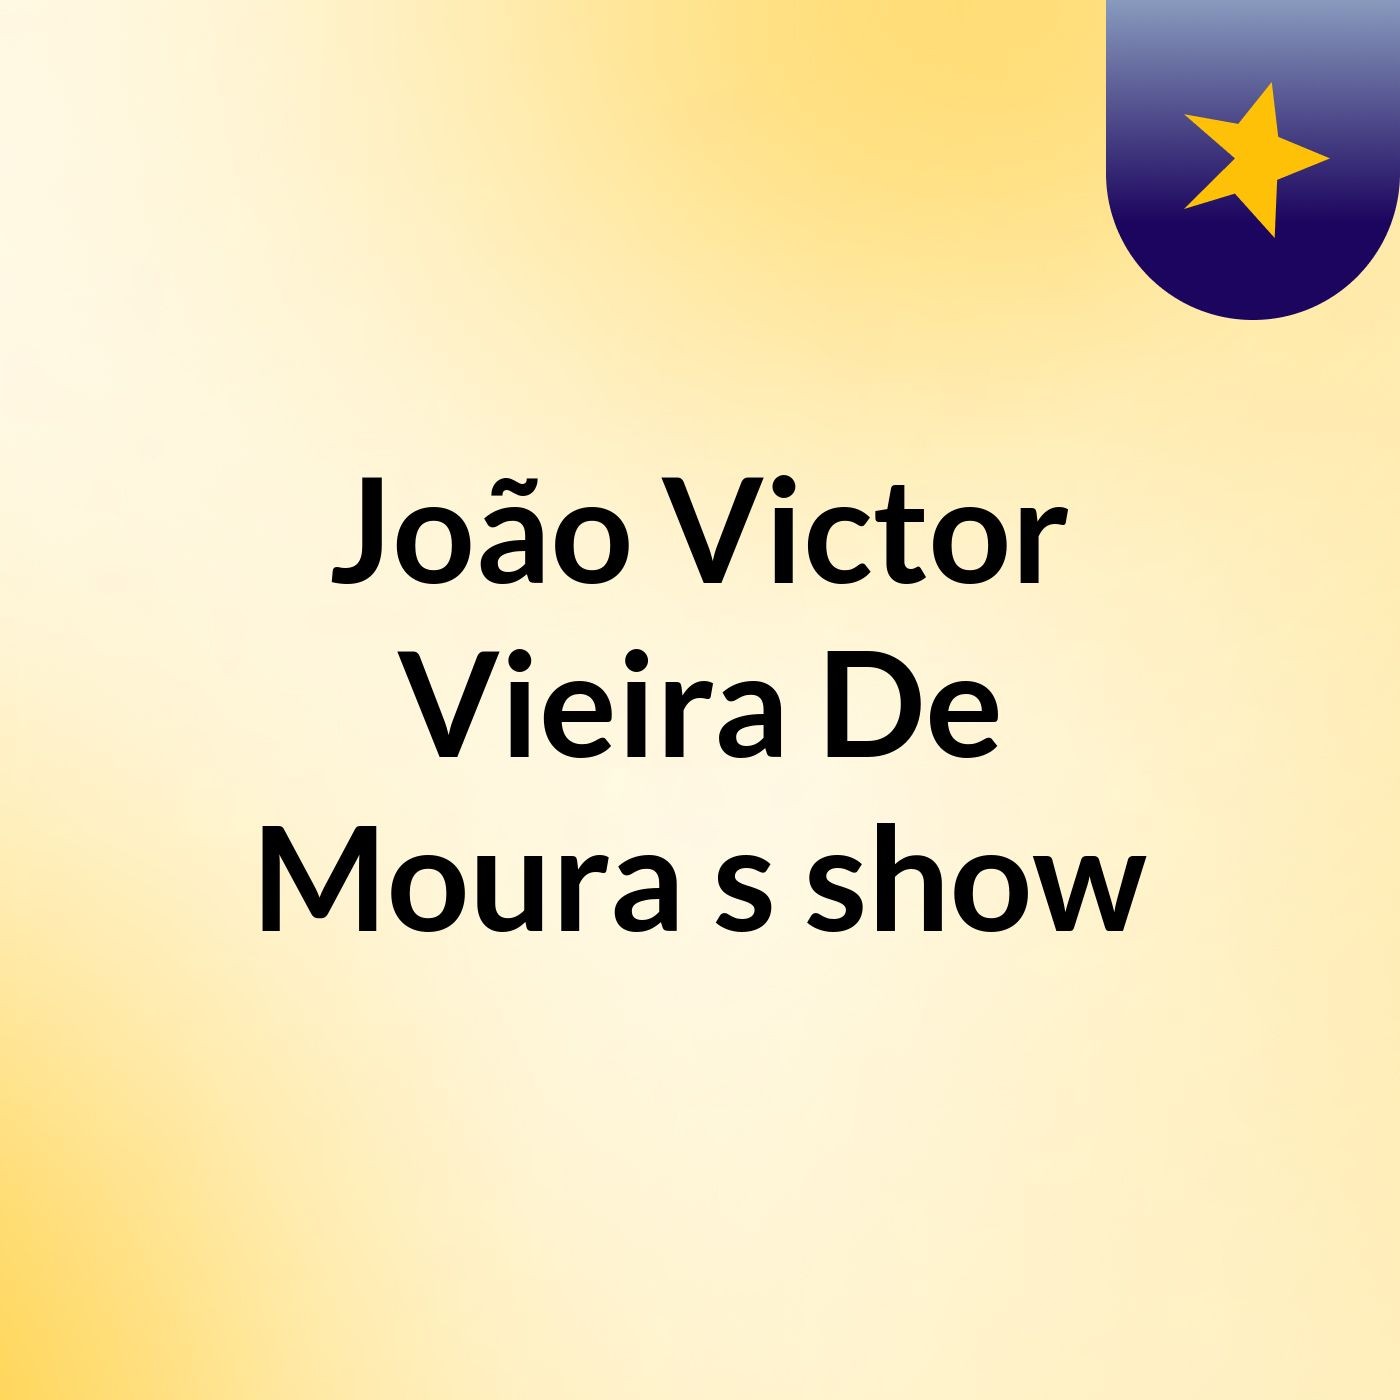 João Victor Vieira De Moura's show